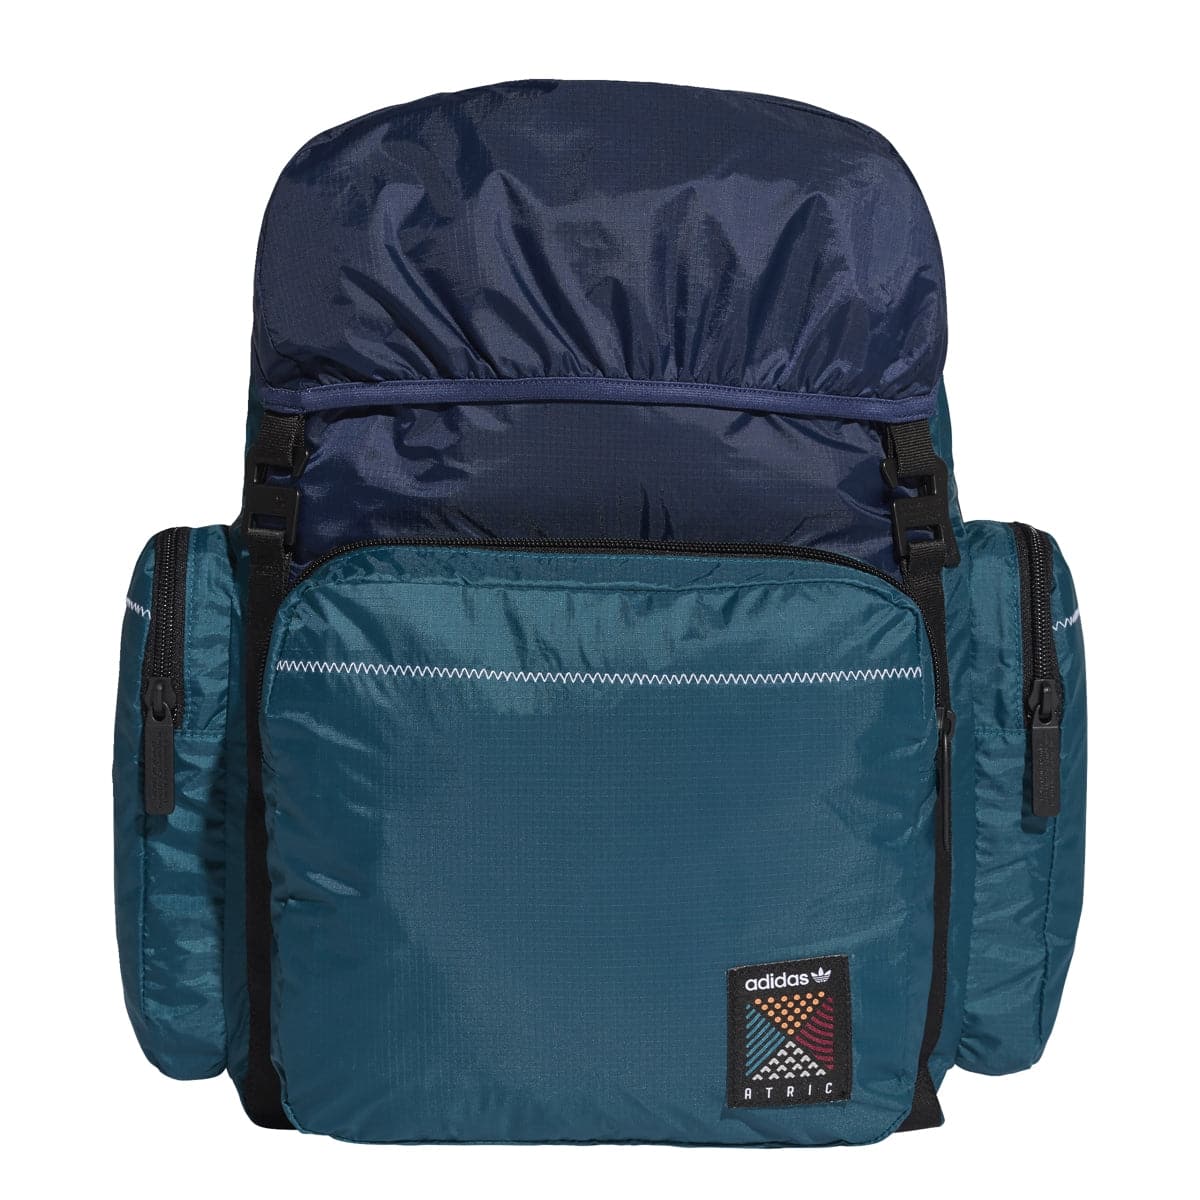 adidas Backpack 'Atric' (Noble Indigo)  - Allike Store